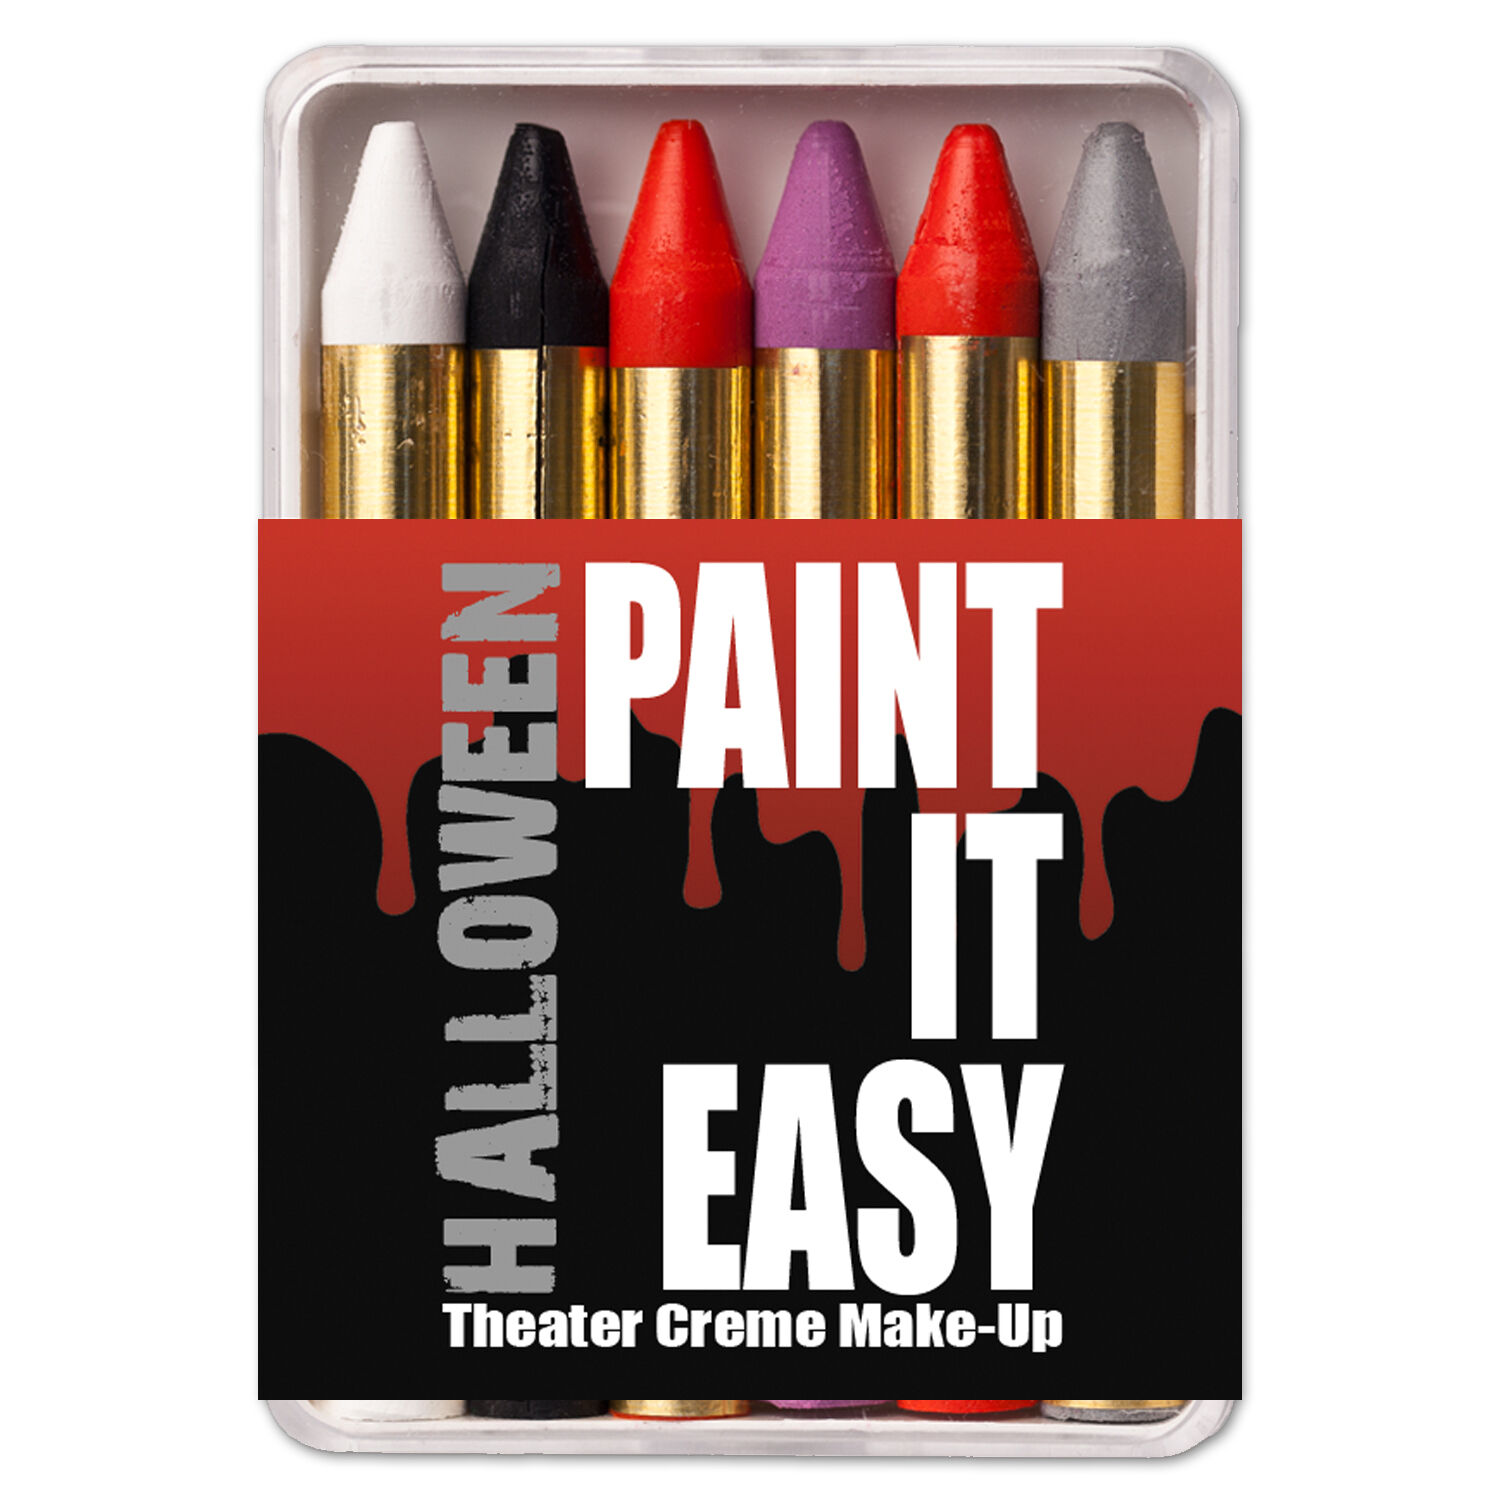 NEU PAINT IT EASY Theater Creme-Make-Up, Schminkstifte auf Fettbasis, in Kunststoffbox, 6 Halloween-Farben